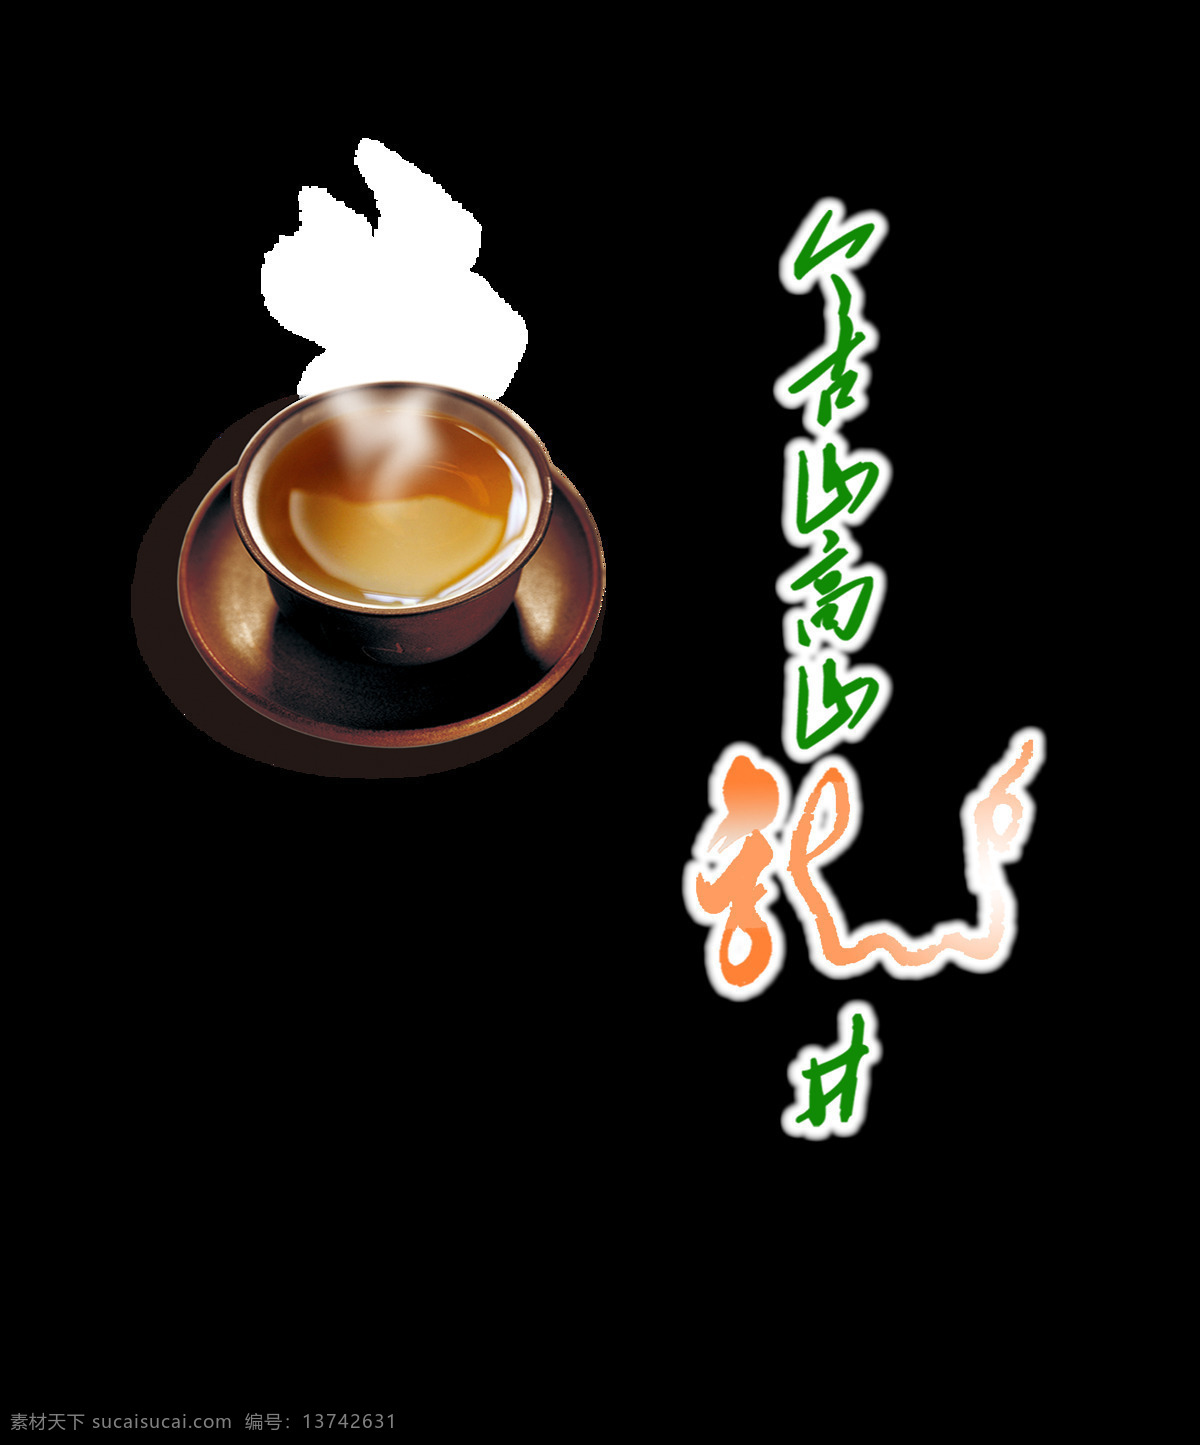 龙井茶 茶杯 茶叶 中国 风 艺术 字 广告 宣传 促销 喝茶 茶道 茶艺 茶韵 海报